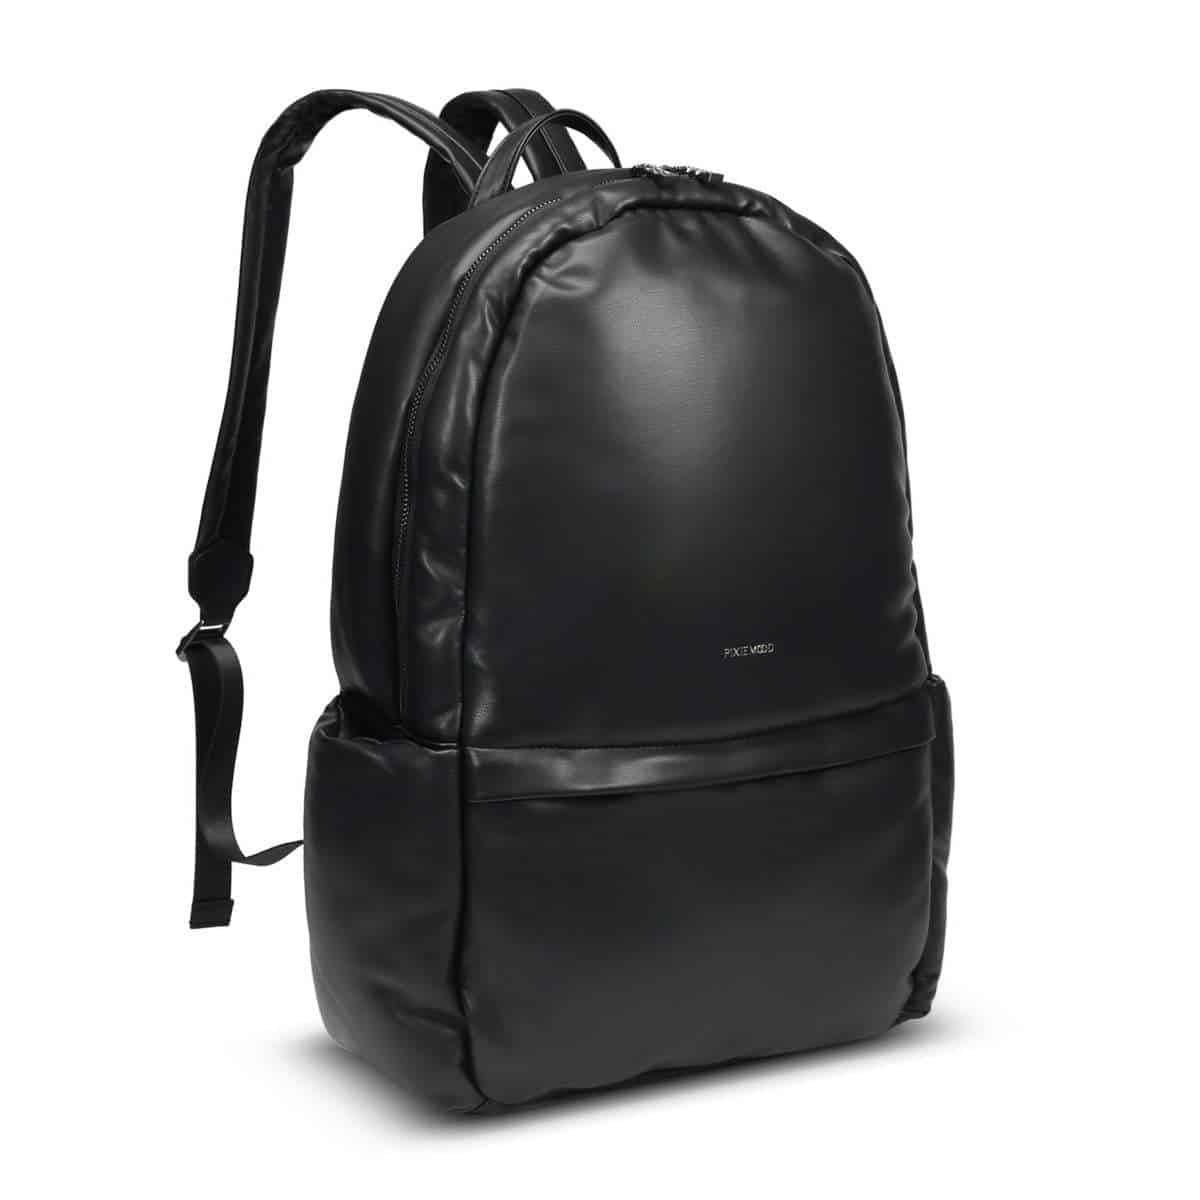 Black leather vegan backpack laptop